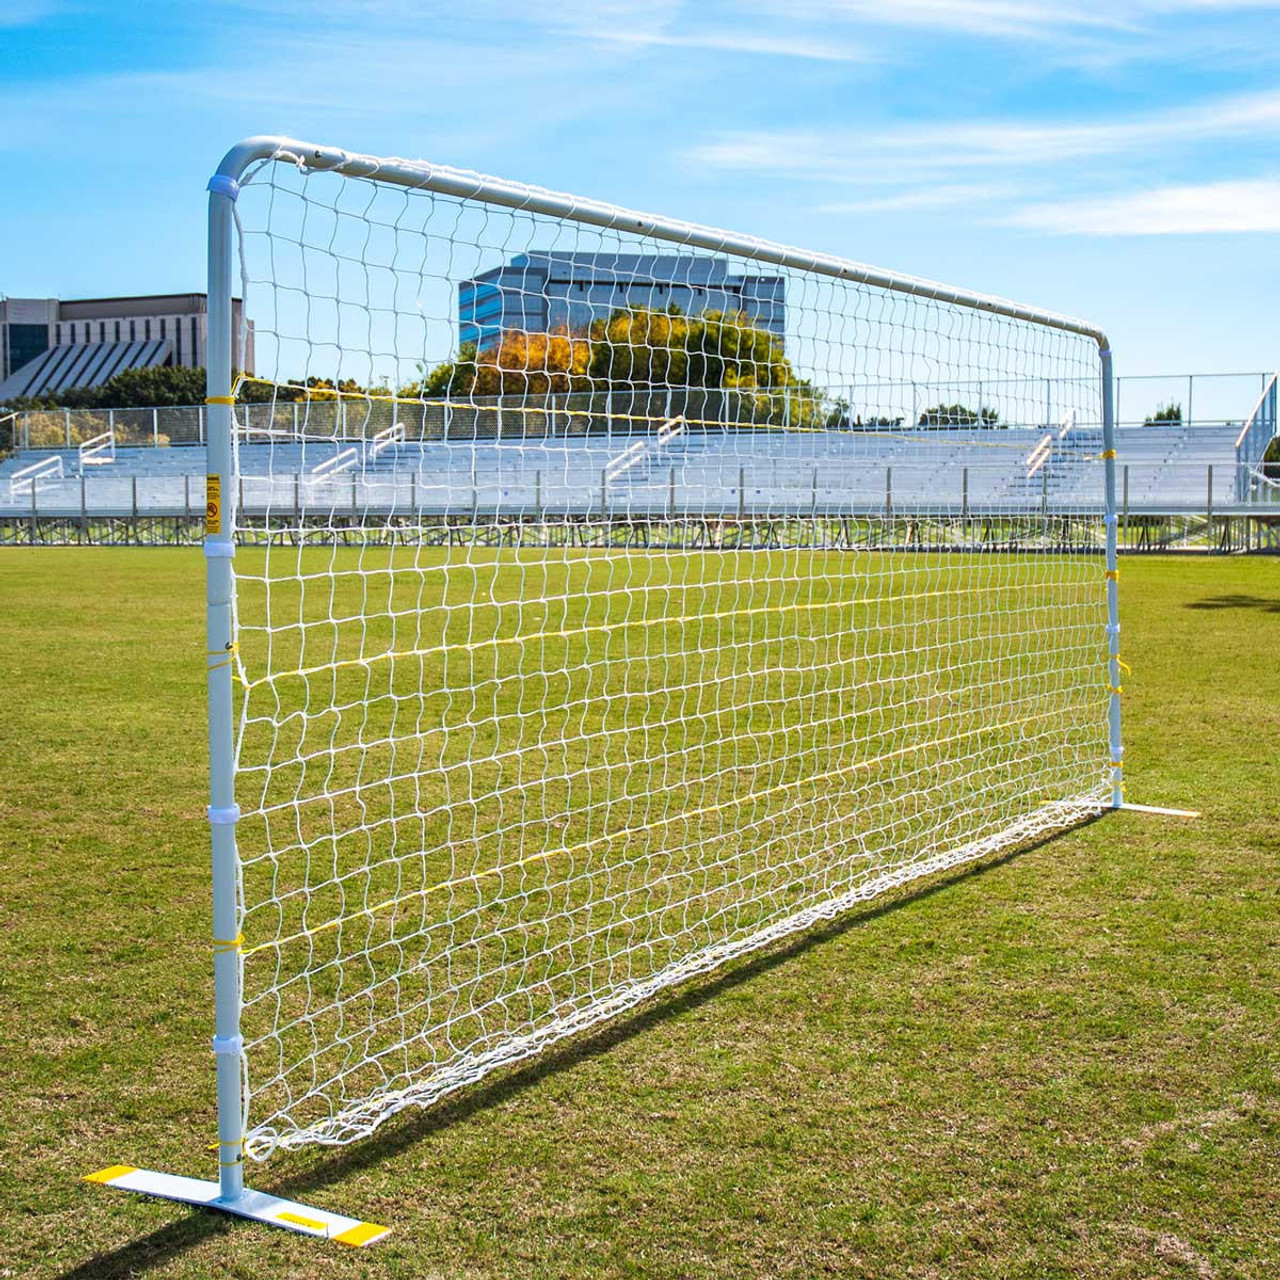  Soccer Targets for Goals Training - Soccer Training